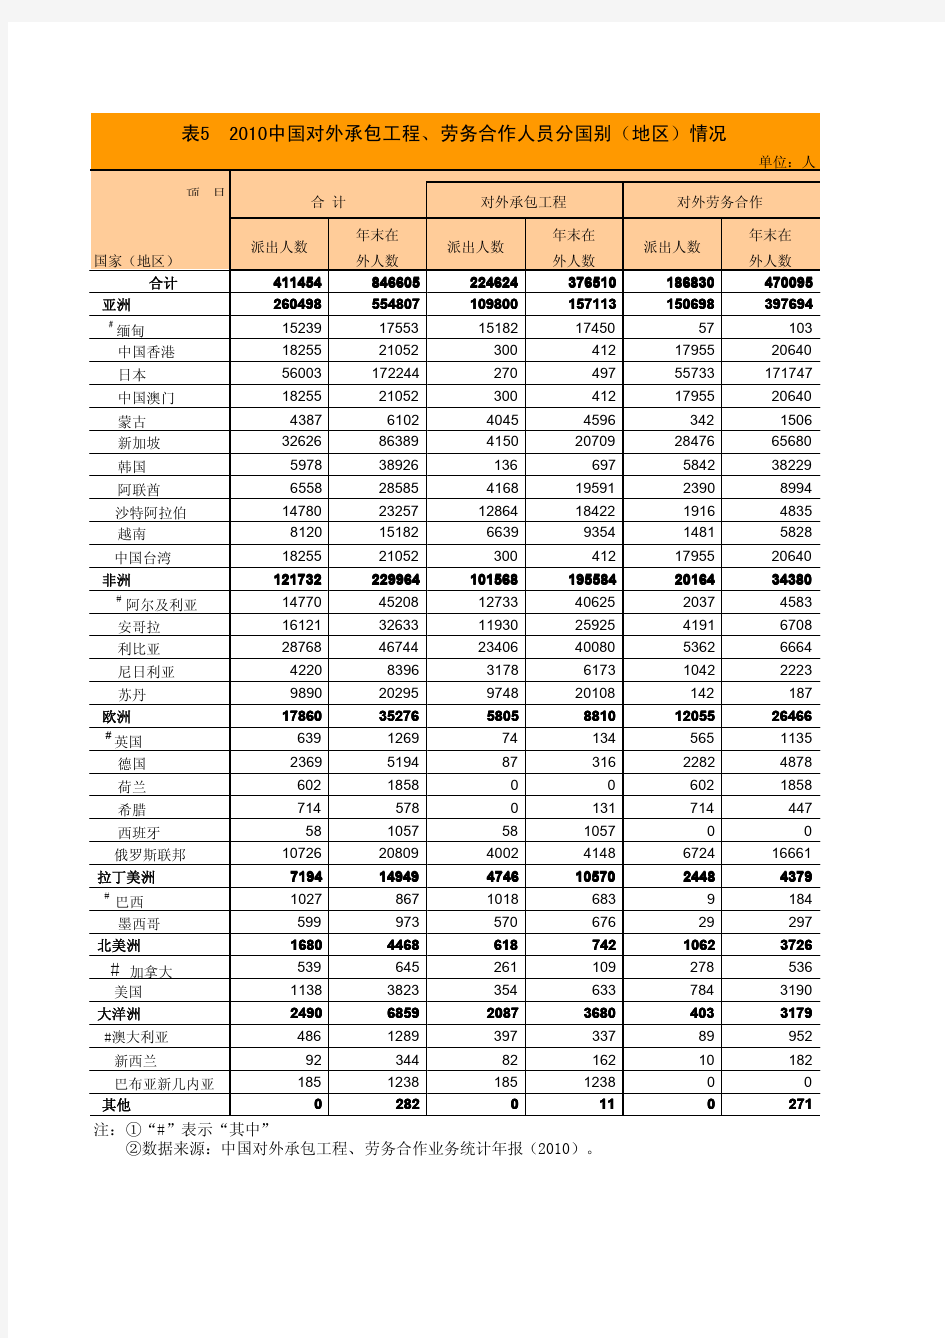 中国对外承包工程、劳务合作人员分国别(地区)情况 2010年